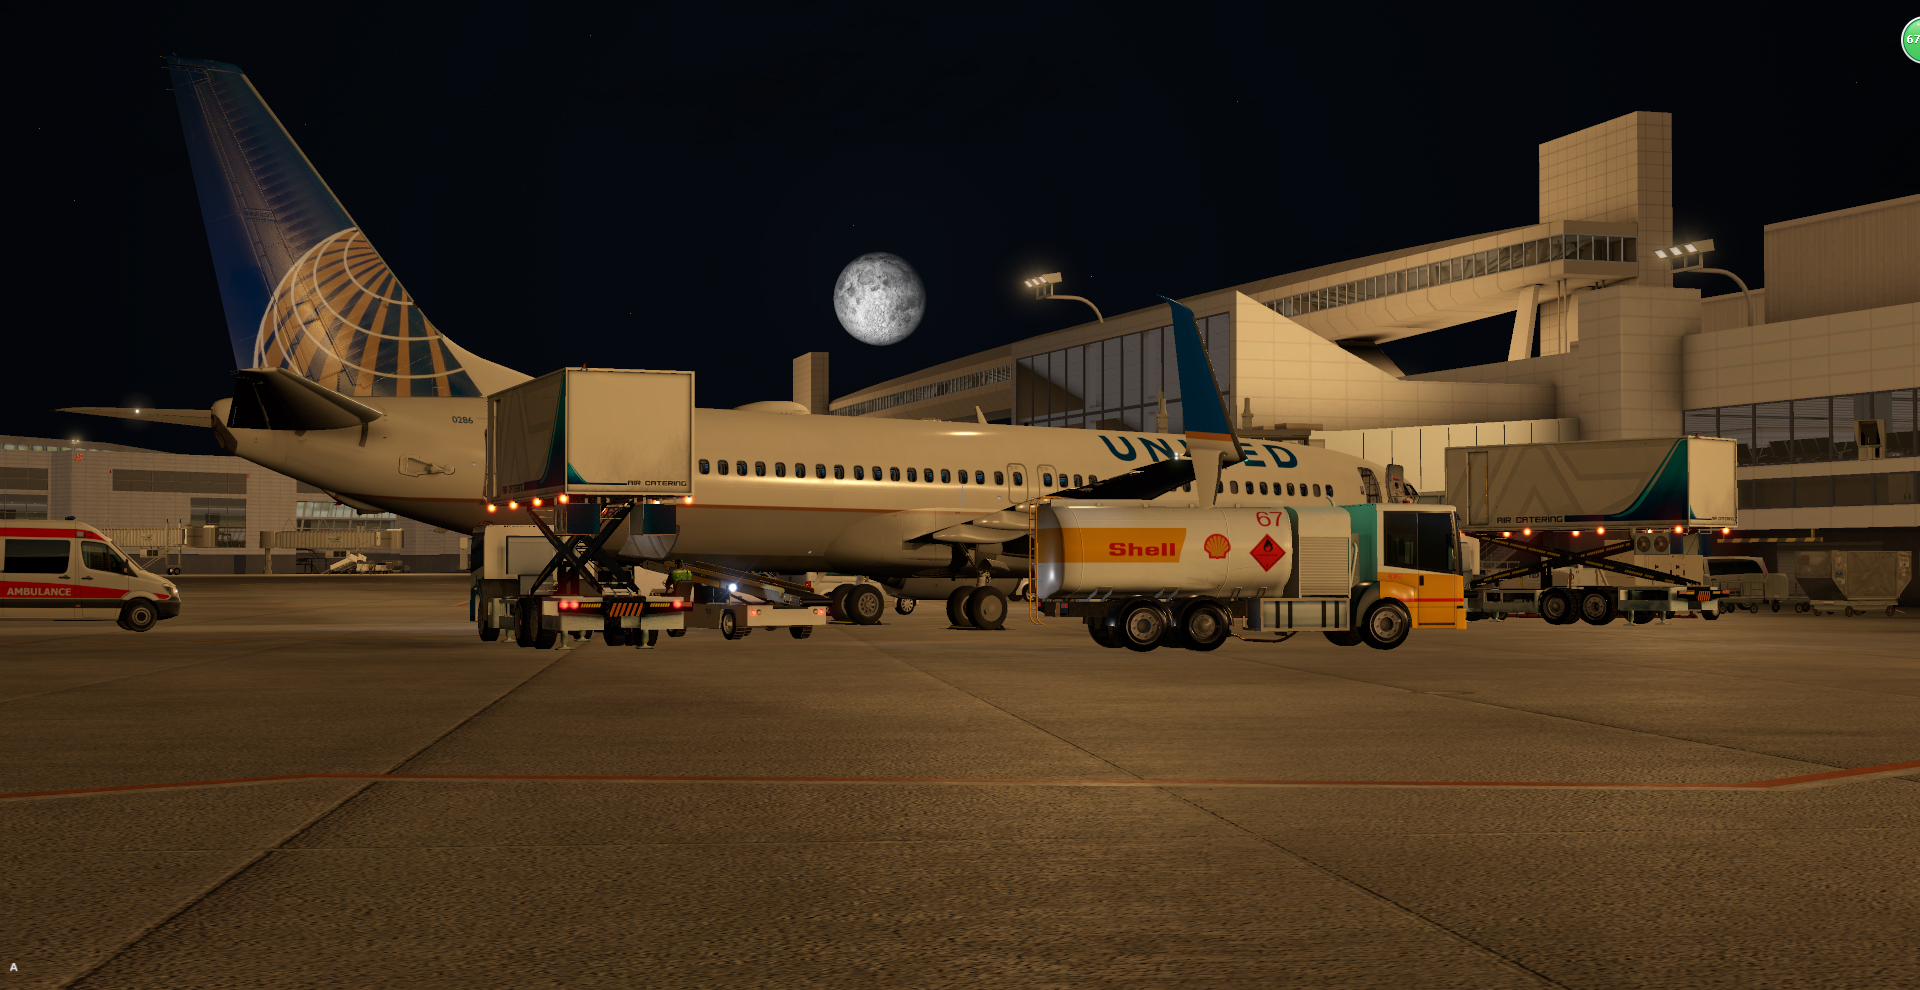 深夜降落—塔科马国际机场-3300 